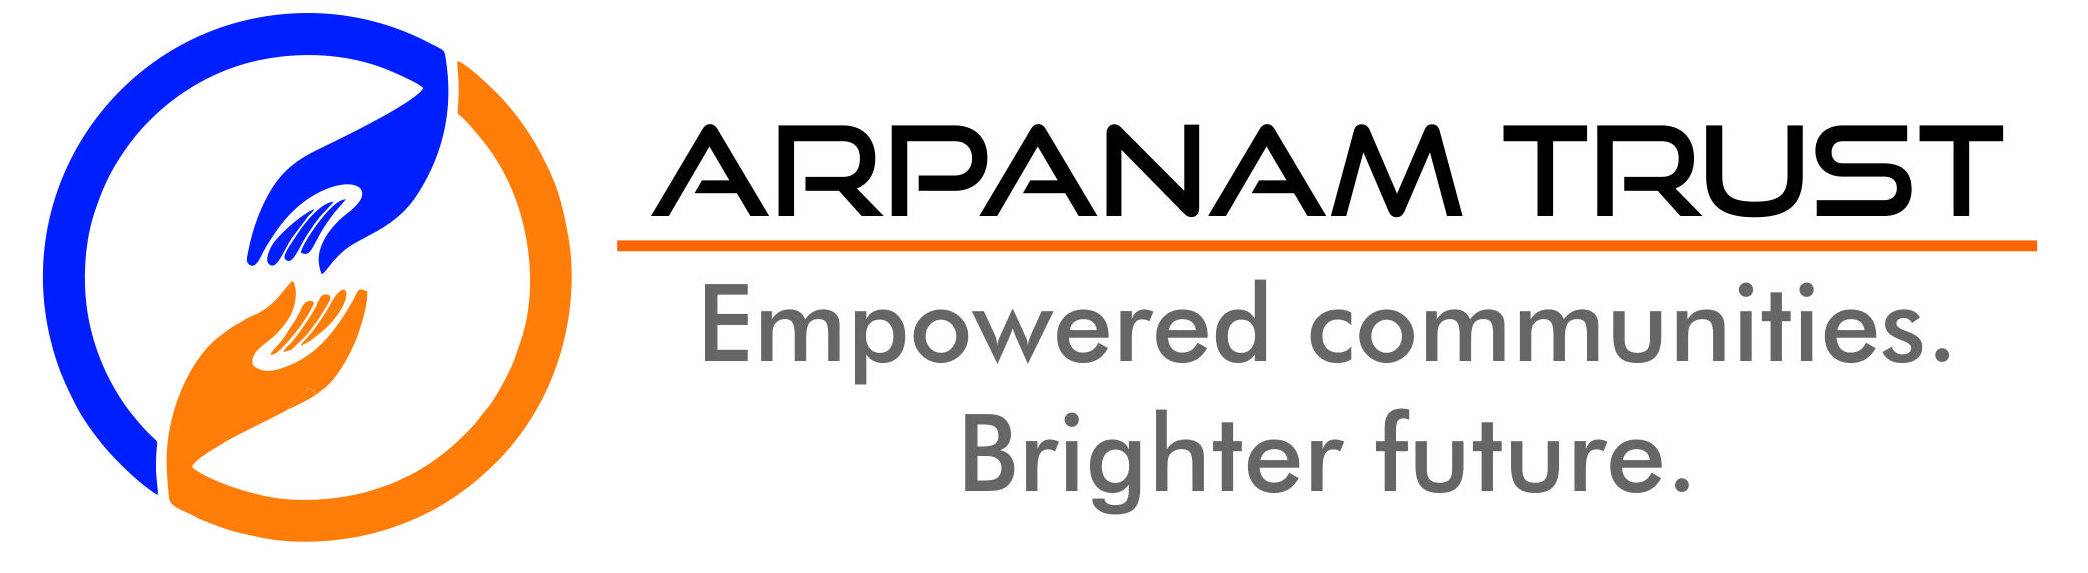 Arpanam Trust logo